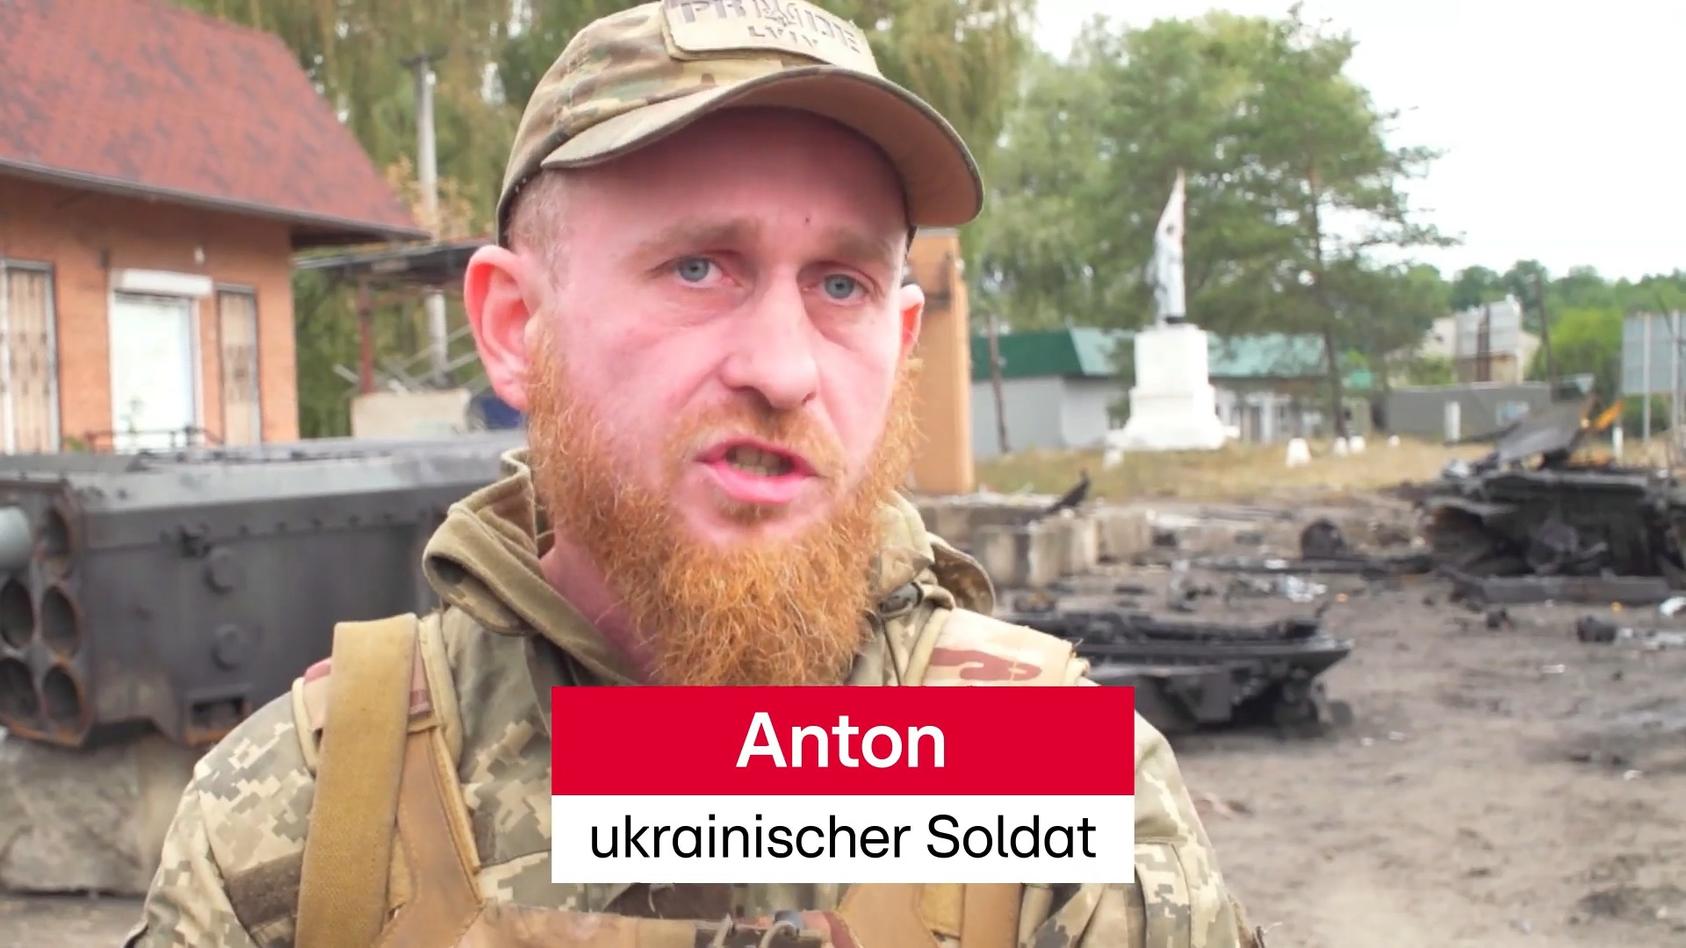 "Brauchen Panzer, um schneller zu gewinnen" Hoffnungen der ukrainischen Soldaten